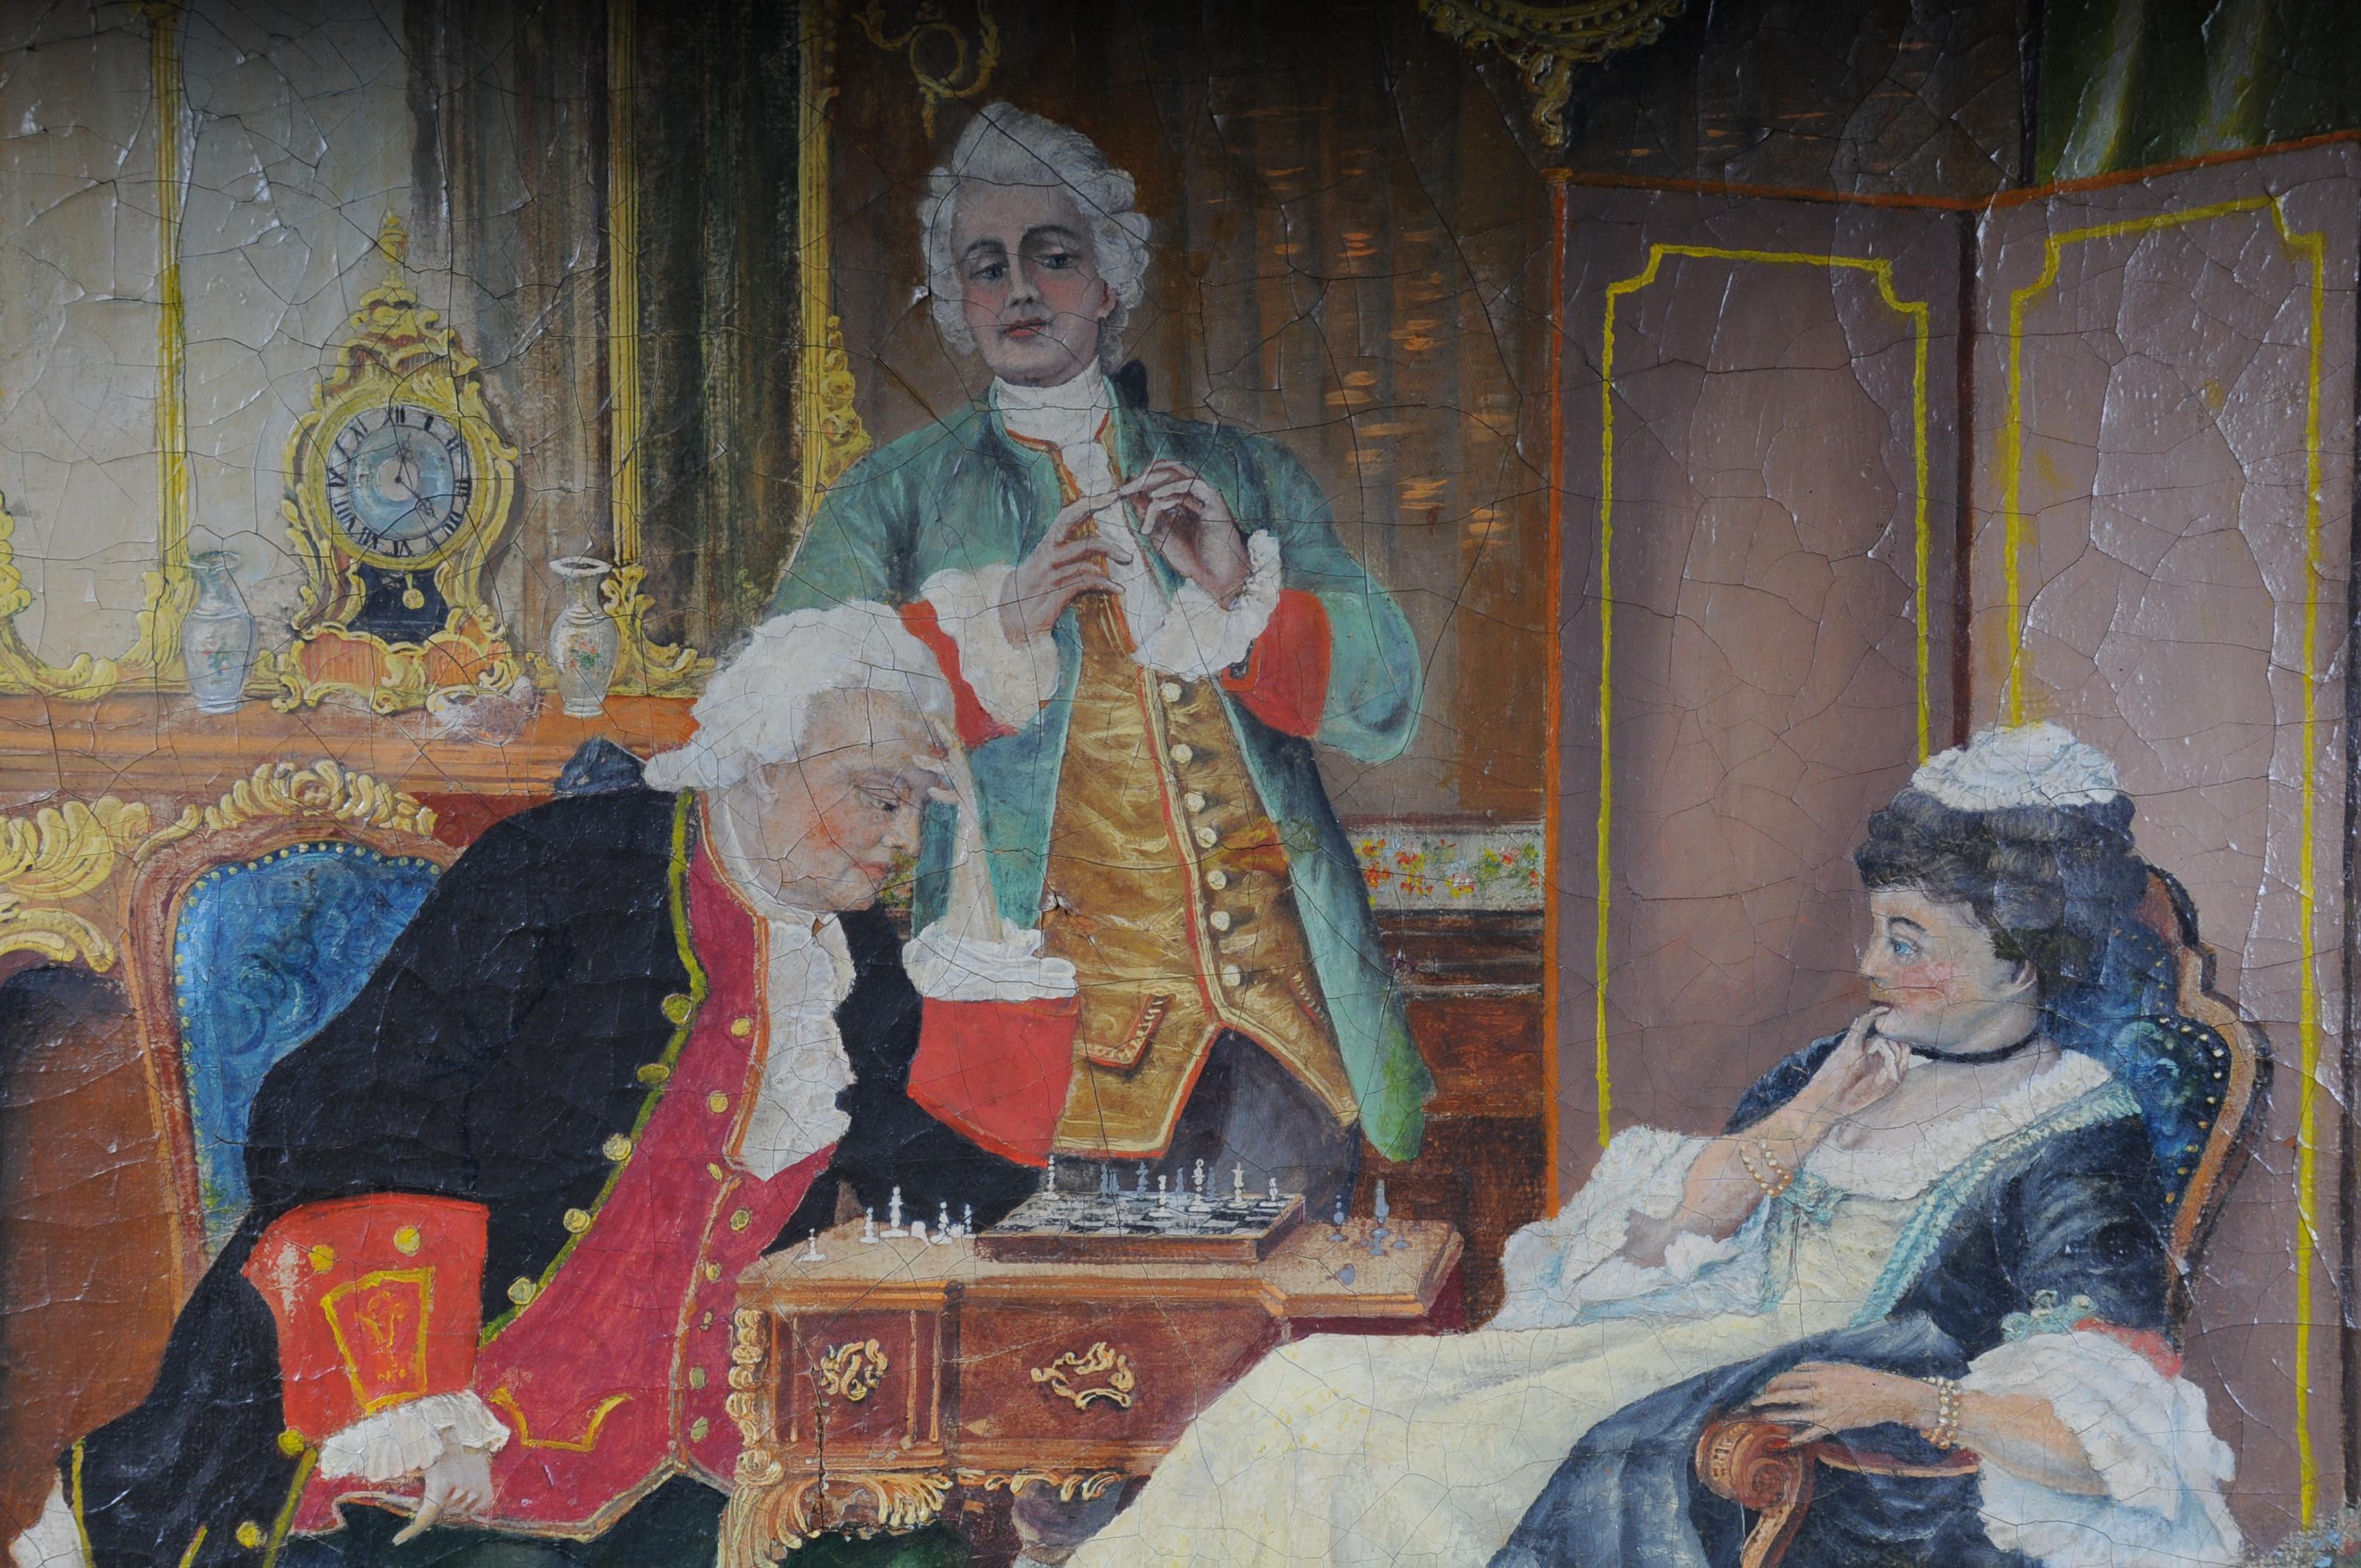 Peinture à l'huile sur toile. Craquelures étendues. Illustrations d'un jeu d'échecs à l'époque rococo. Très décoratif et peint de façon colorée. Peinture encadrée, œuvre non signée


(S - 227).